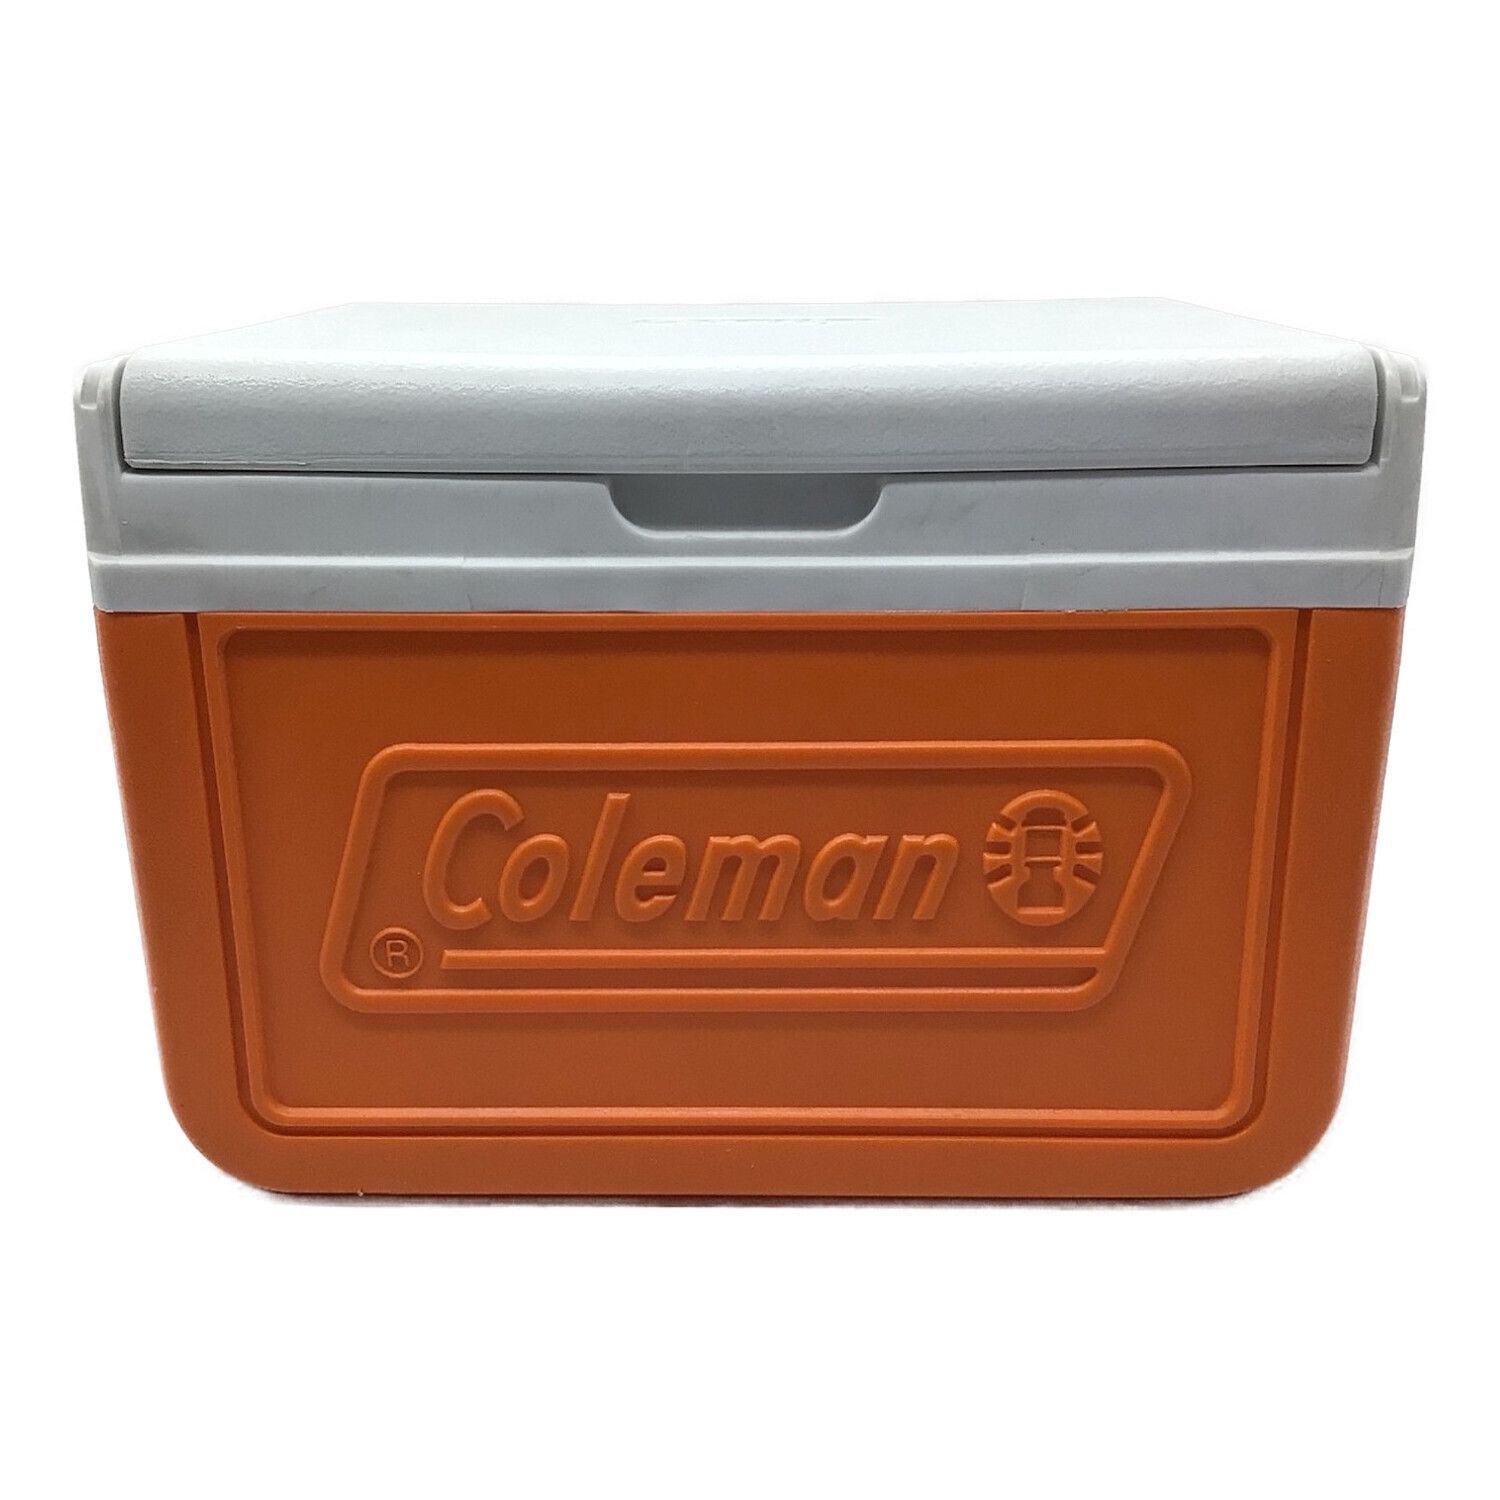 Coleman (コールマン) テイク 5205 オレンジ 希少品 クーラーボックス